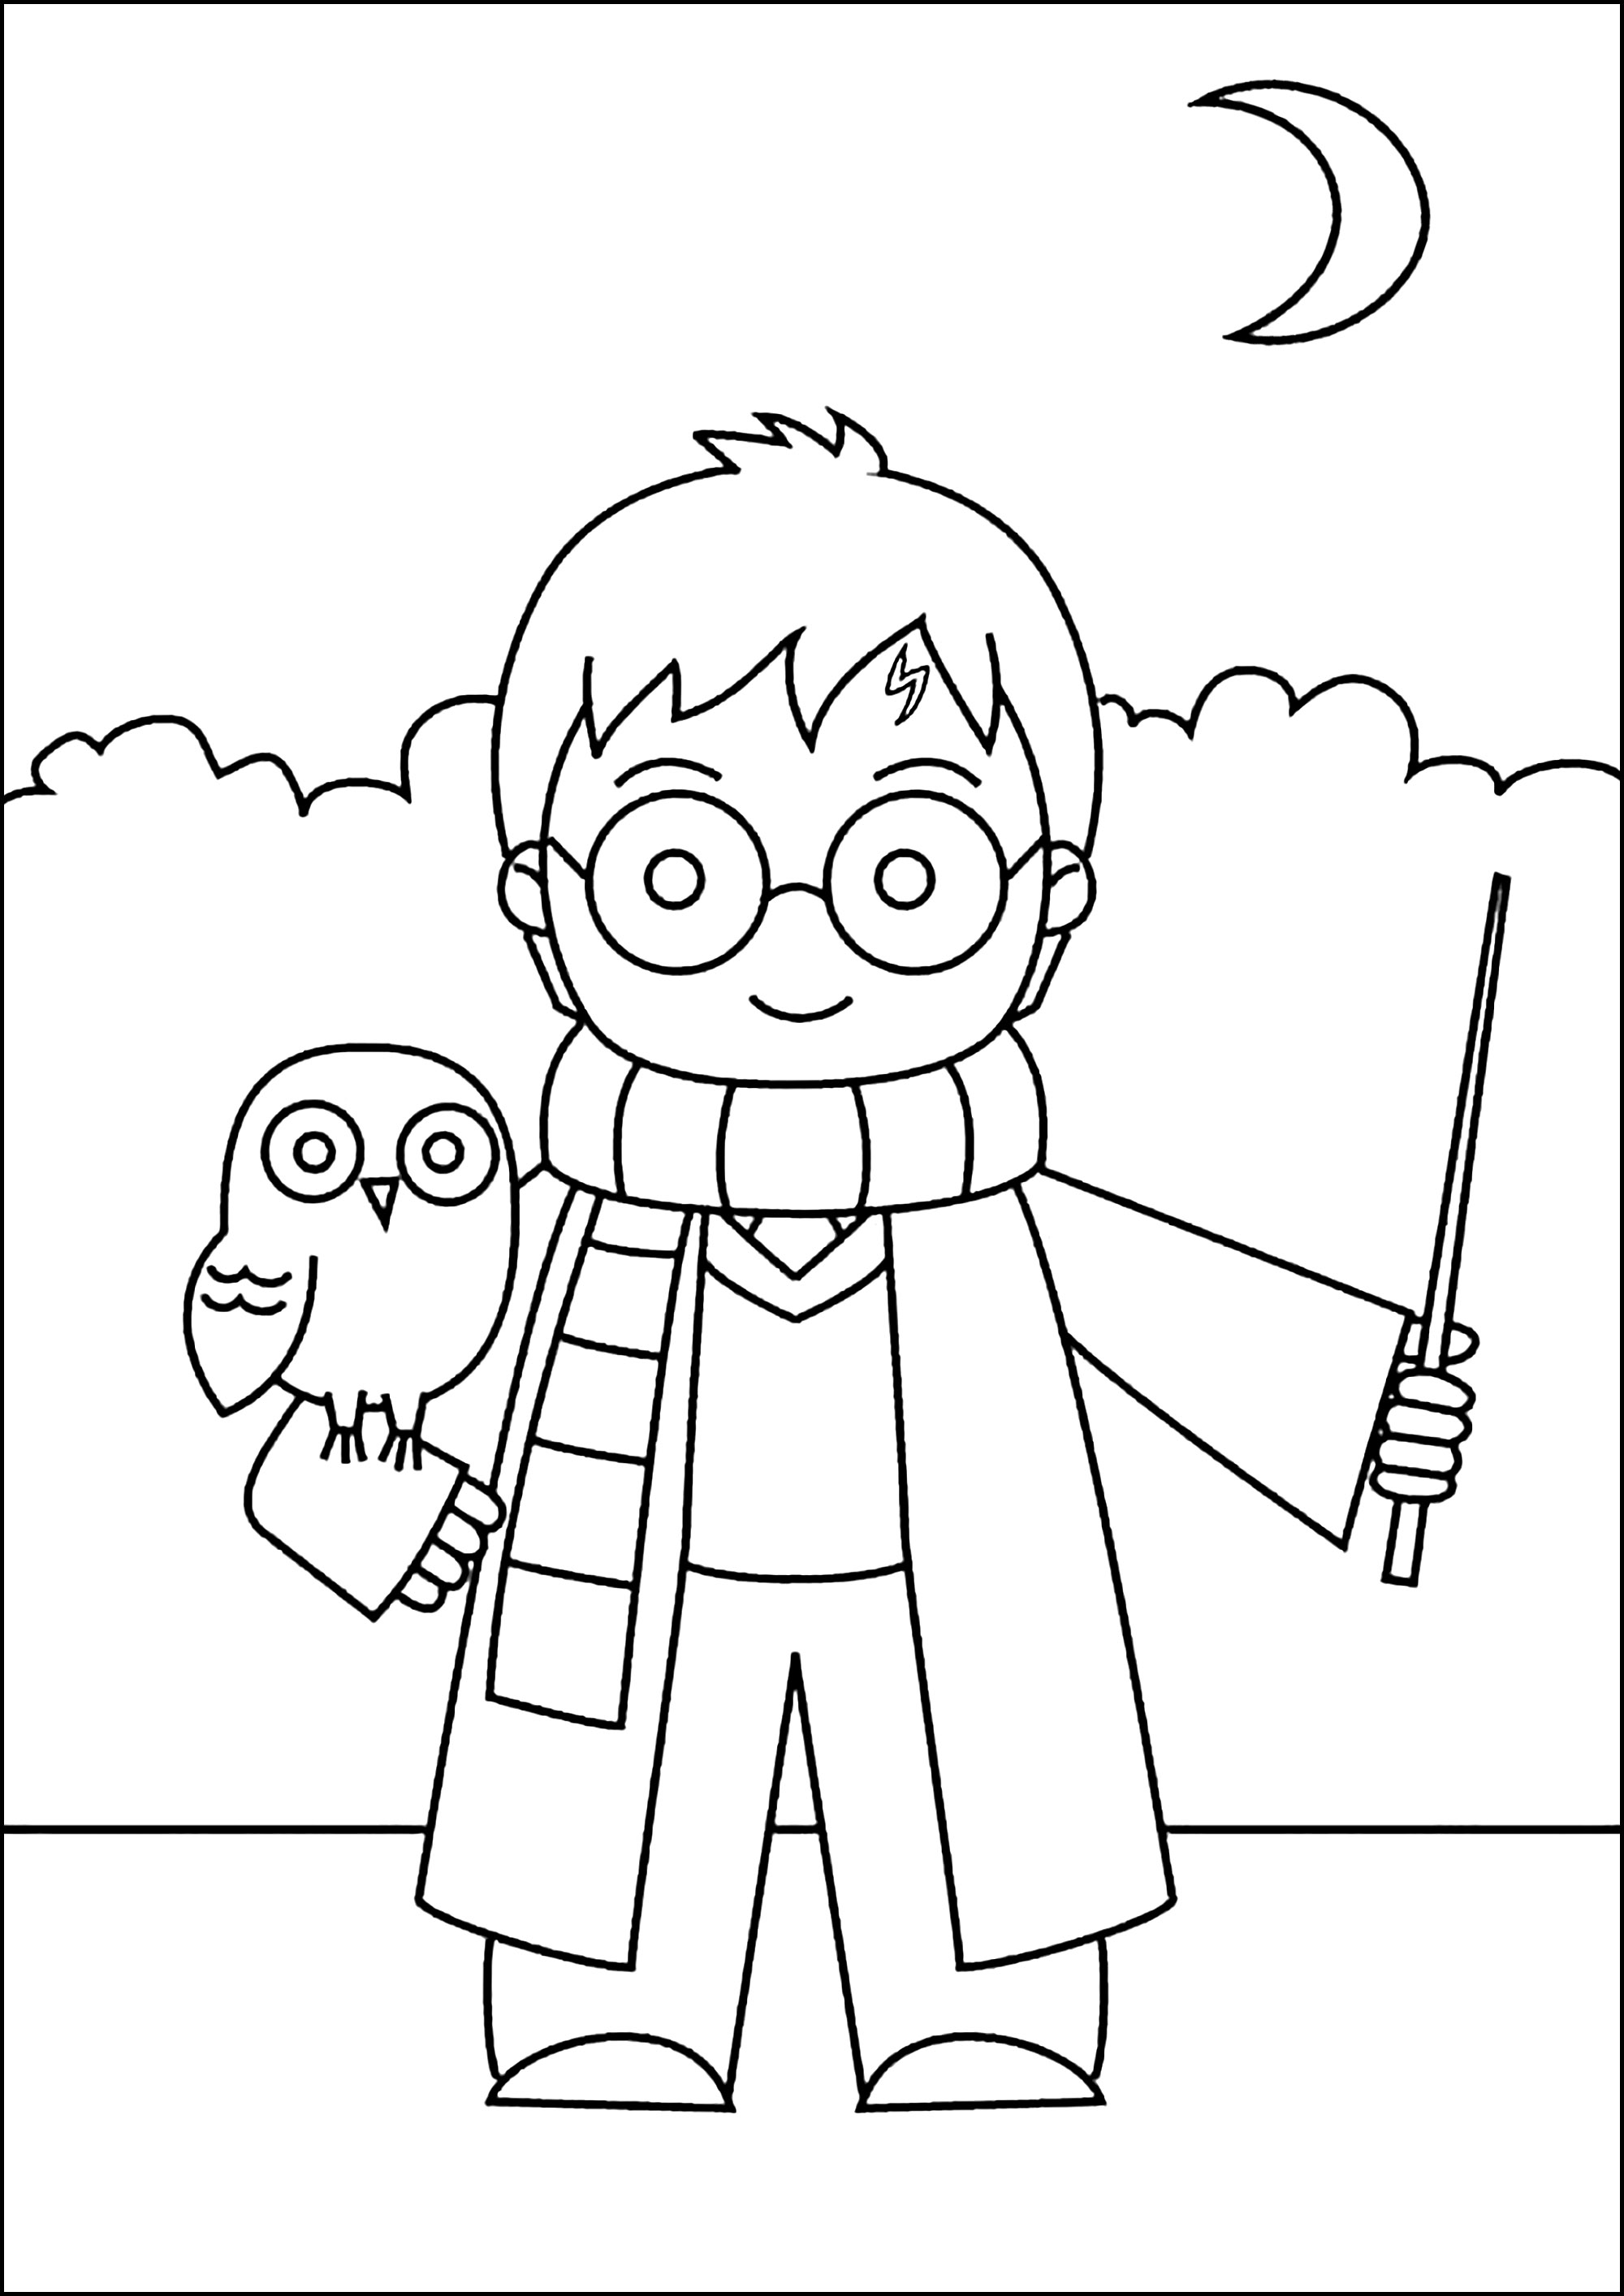 Dibujo sencillo de Harry Potter para colorear